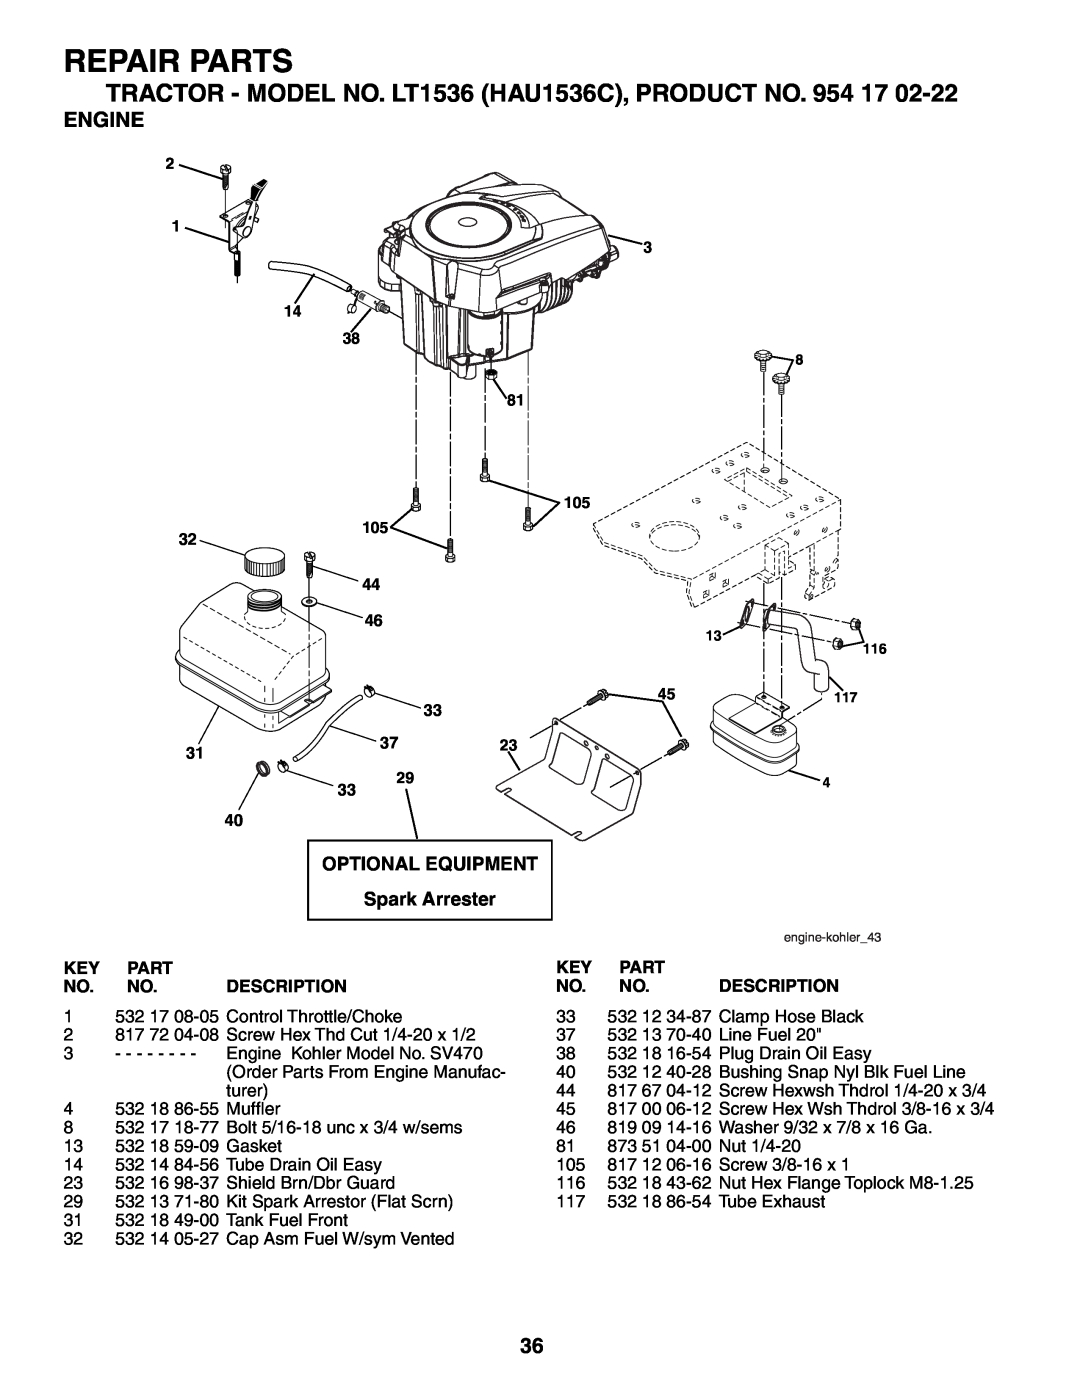 Husqvarna owner manual Engine, Repair Parts, TRACTOR - MODEL NO. LT1536 HAU1536C, PRODUCT NO. 954 17, Description 